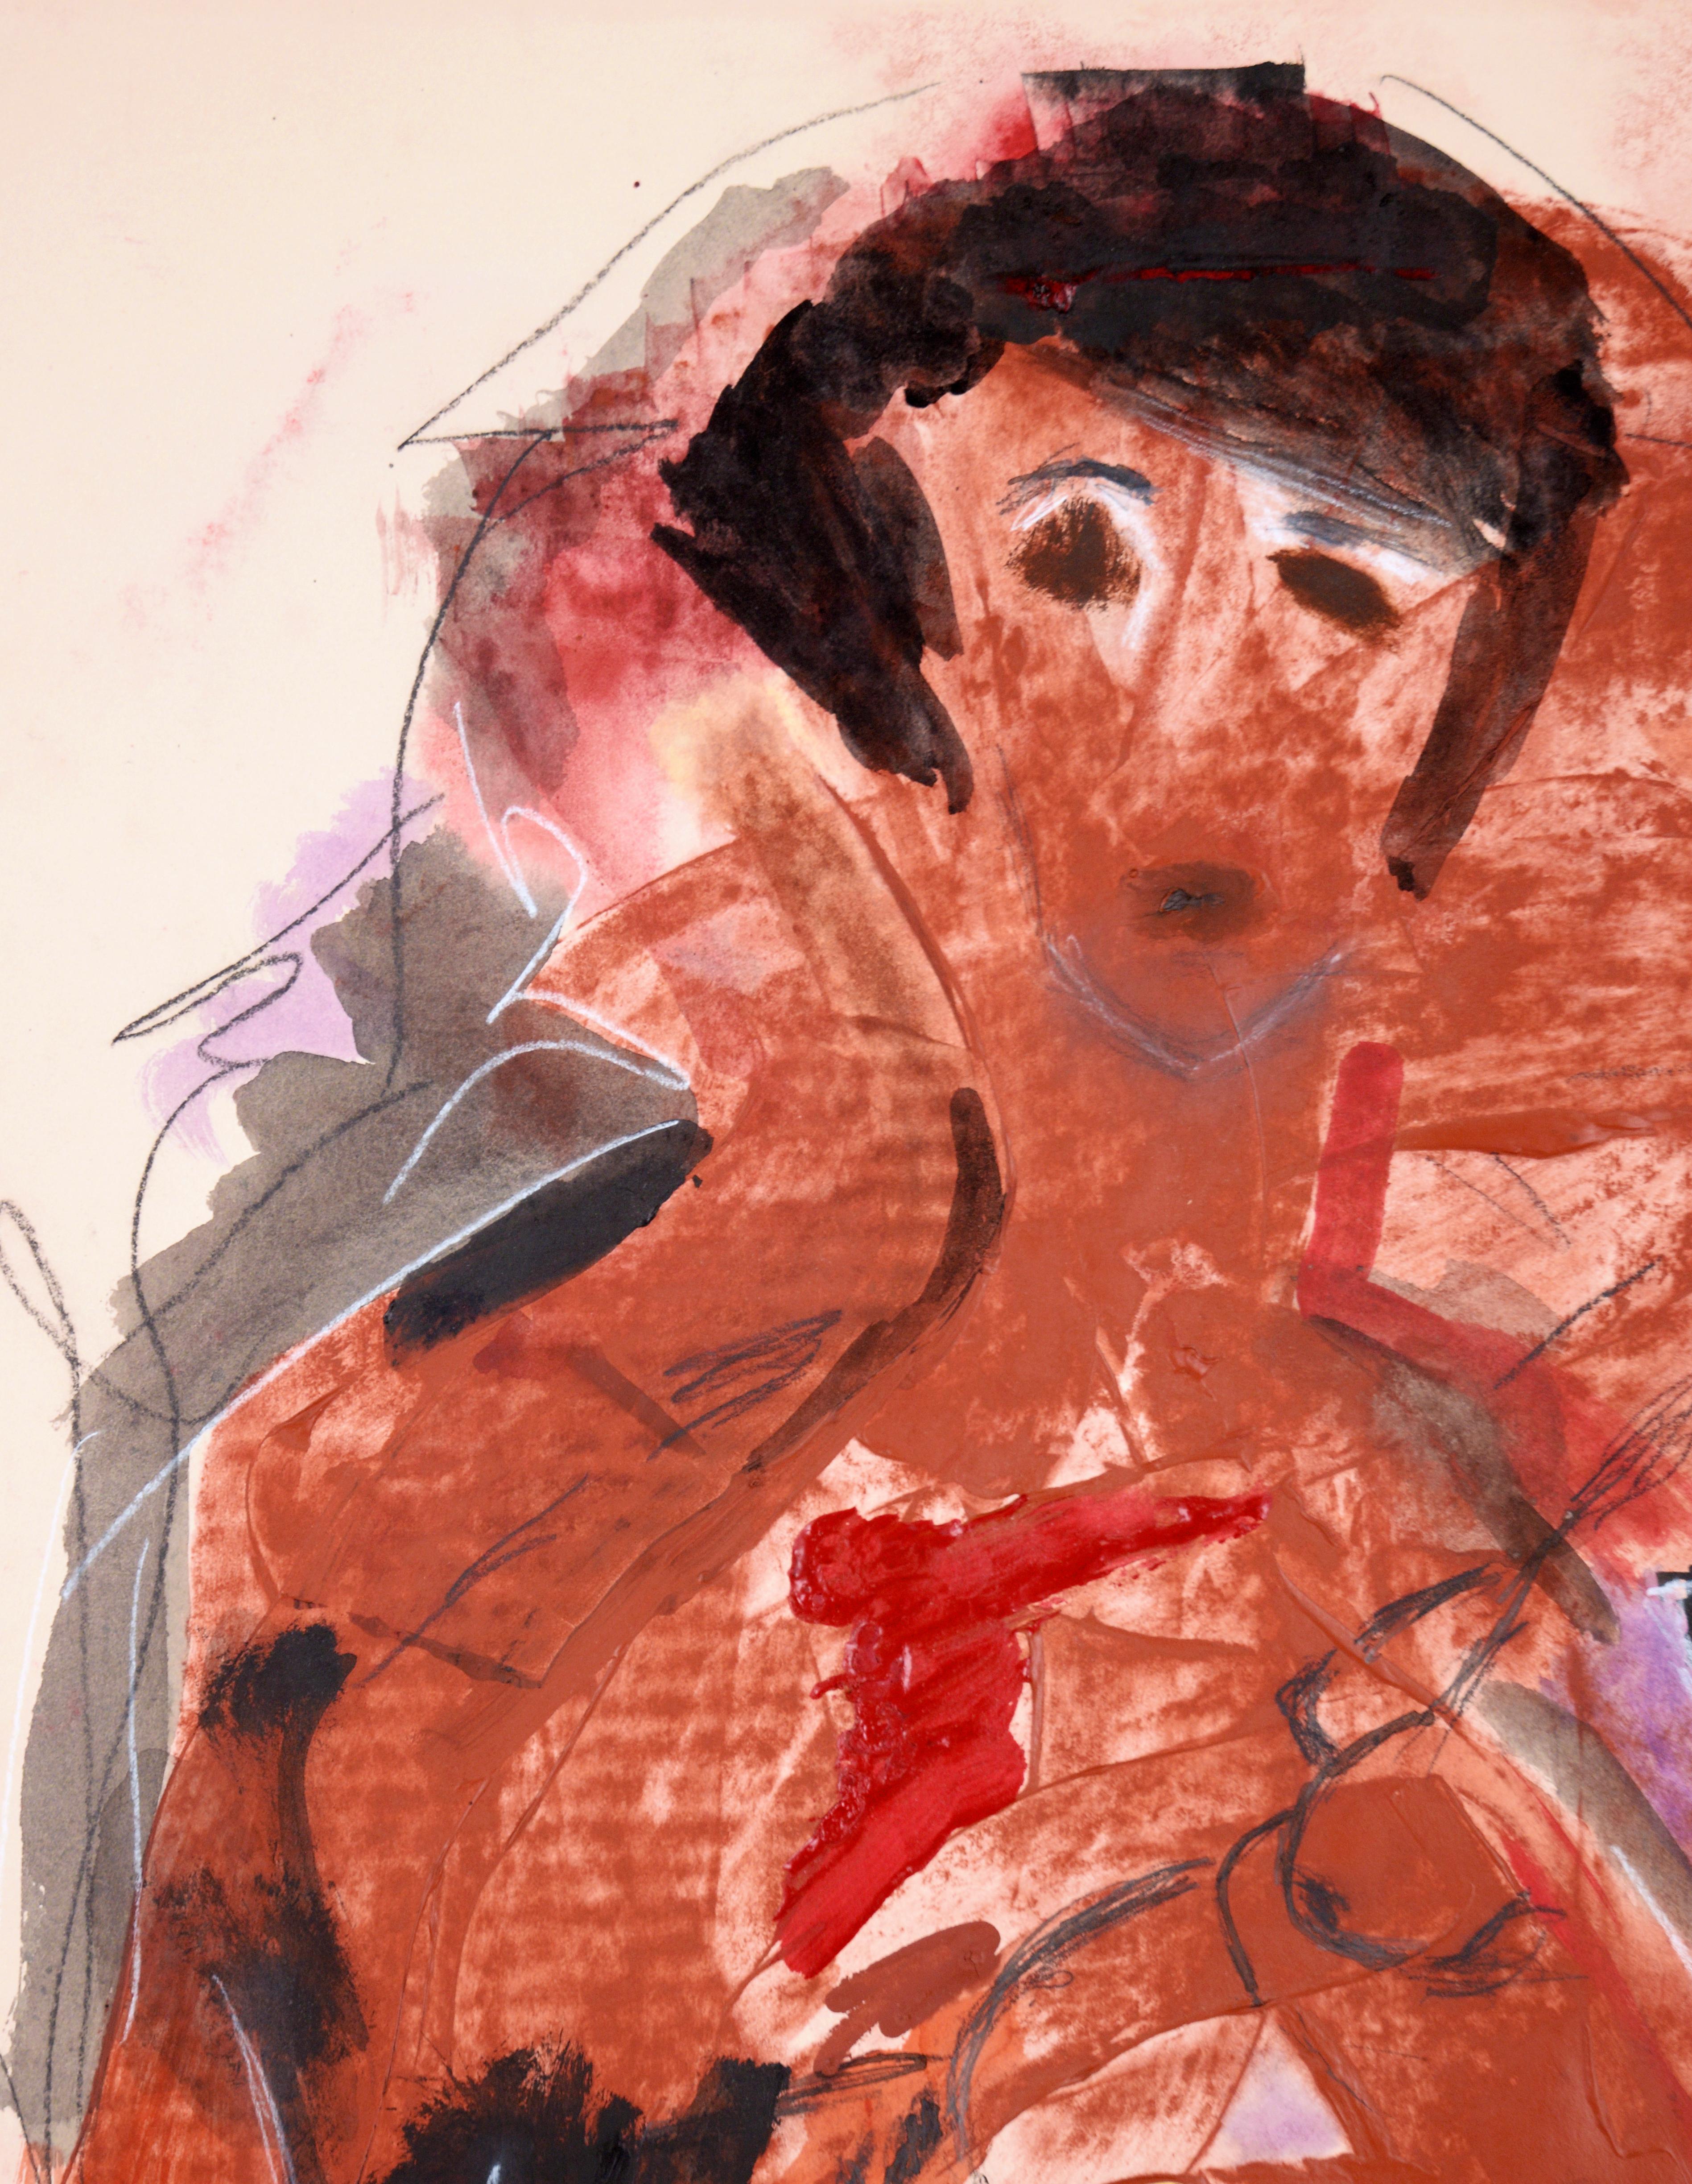 Alan Partridge: „Bleibendes Herz“ – Abstrakter Expressionismus
Doppelseitiges Kunstwerk: Rückseite abstrakter Expressionismus stellt eine Tänzerin in einem korallenroten Kleid dar 

Ein gedämpftes abstraktes Gemälde in Rabenschwarz mit verbranntem